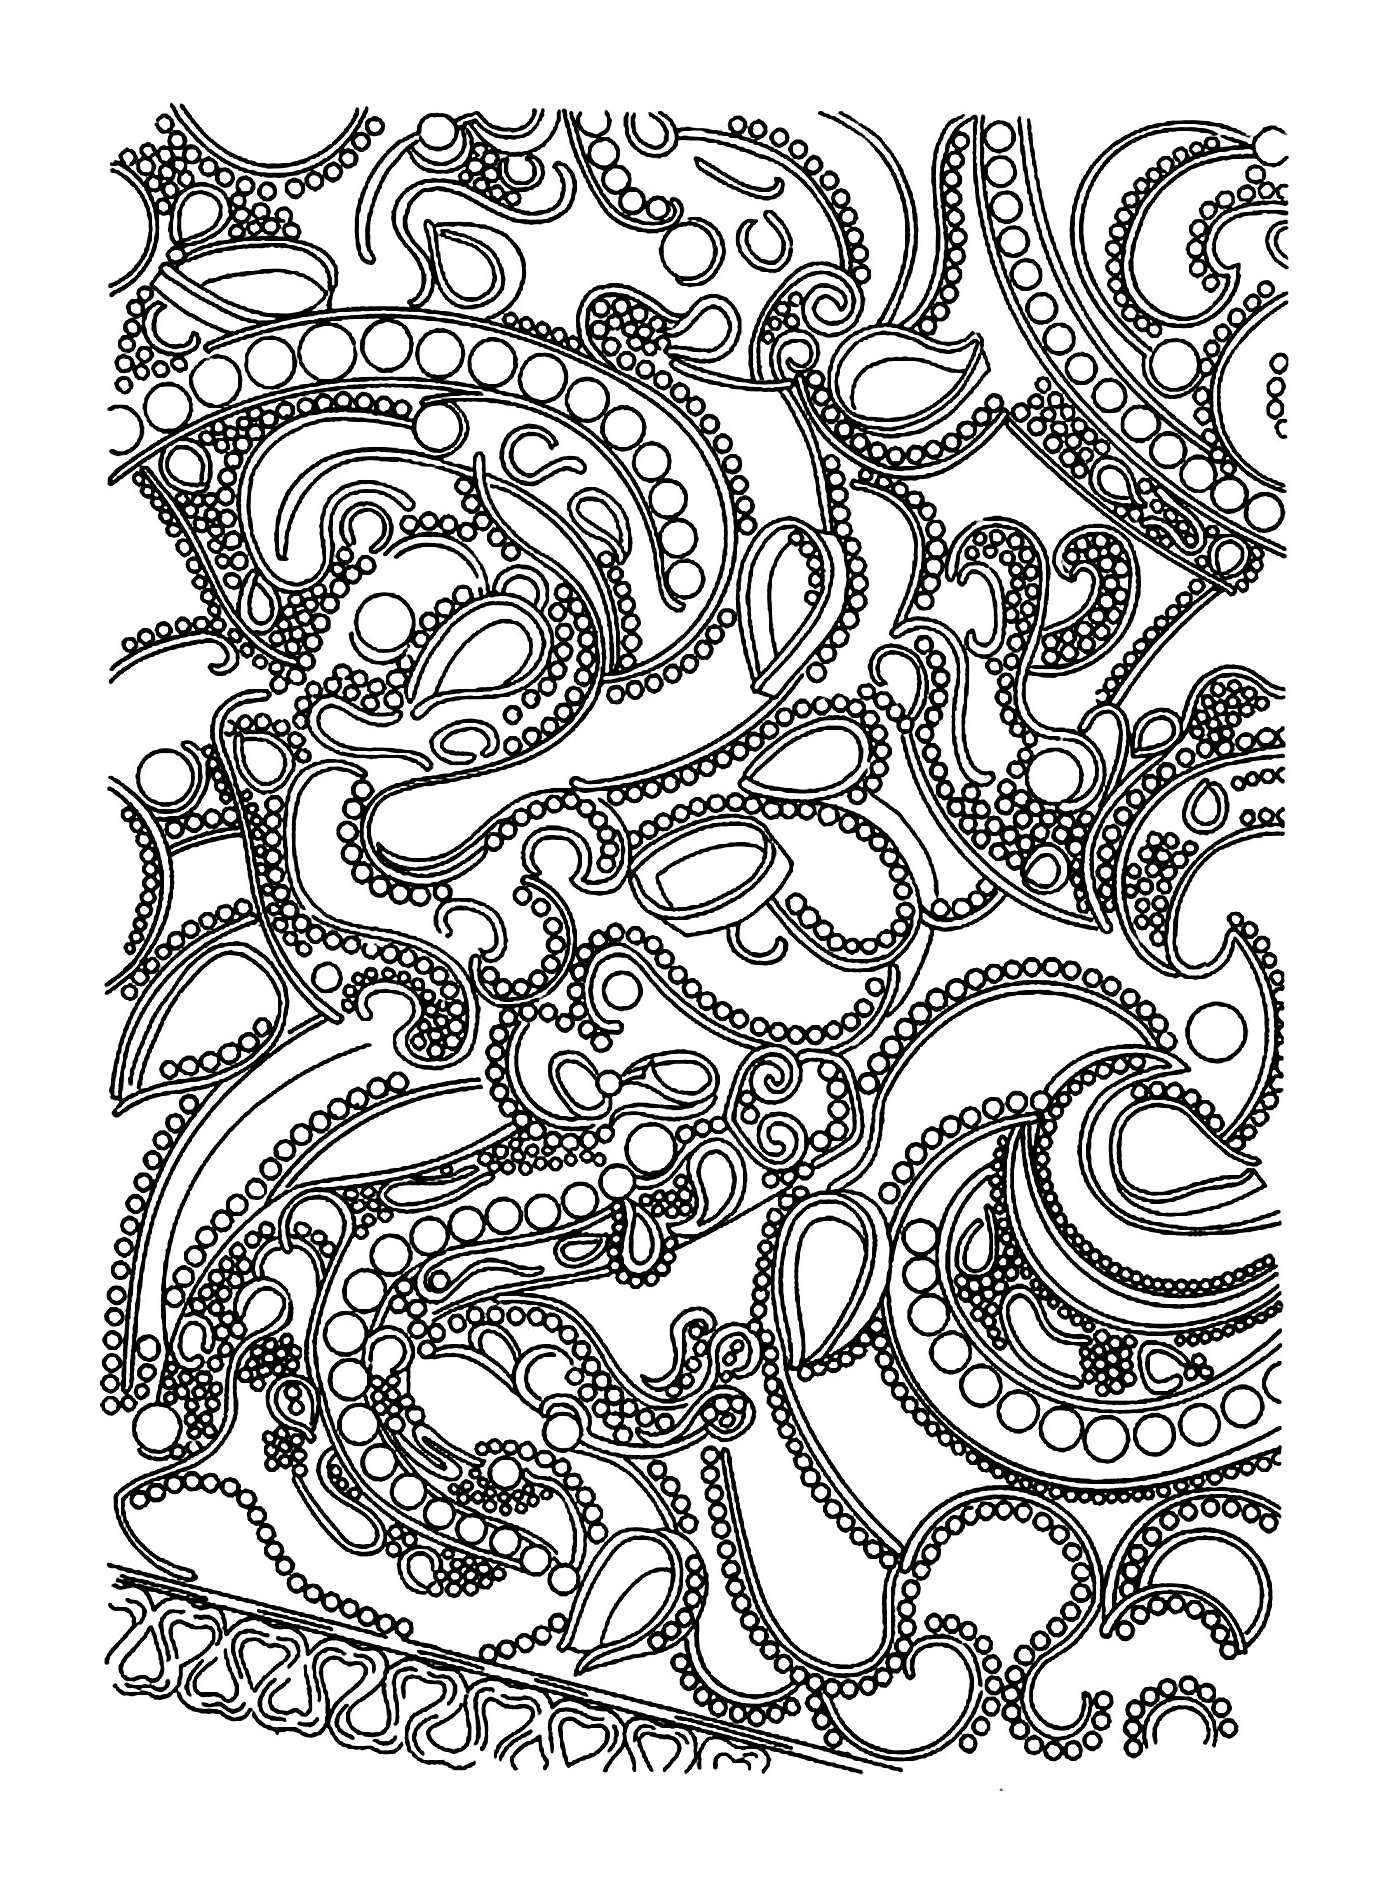  an octopus pattern 